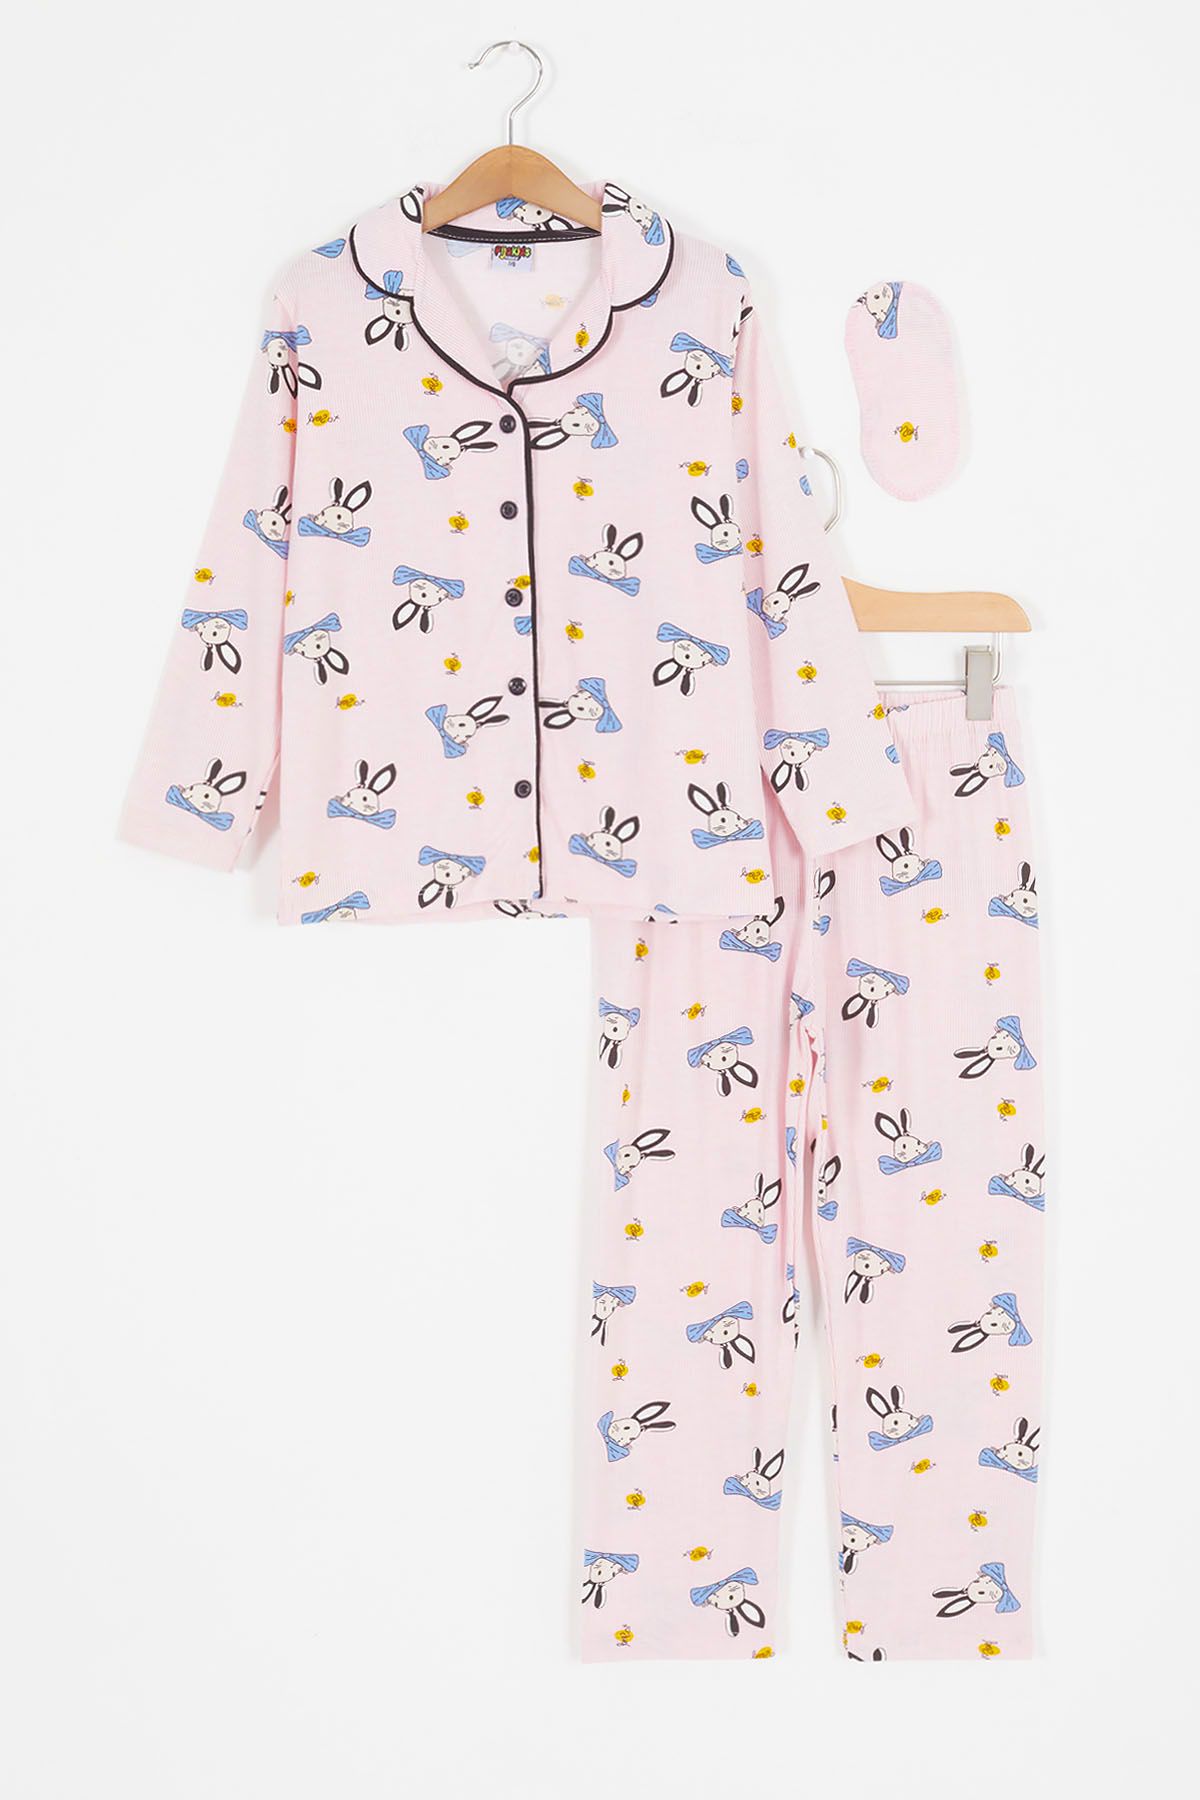 Cansın Mini Pembe Tavşan Desenli Düğmeli Kız Çocuk Pijama Takımı 17087